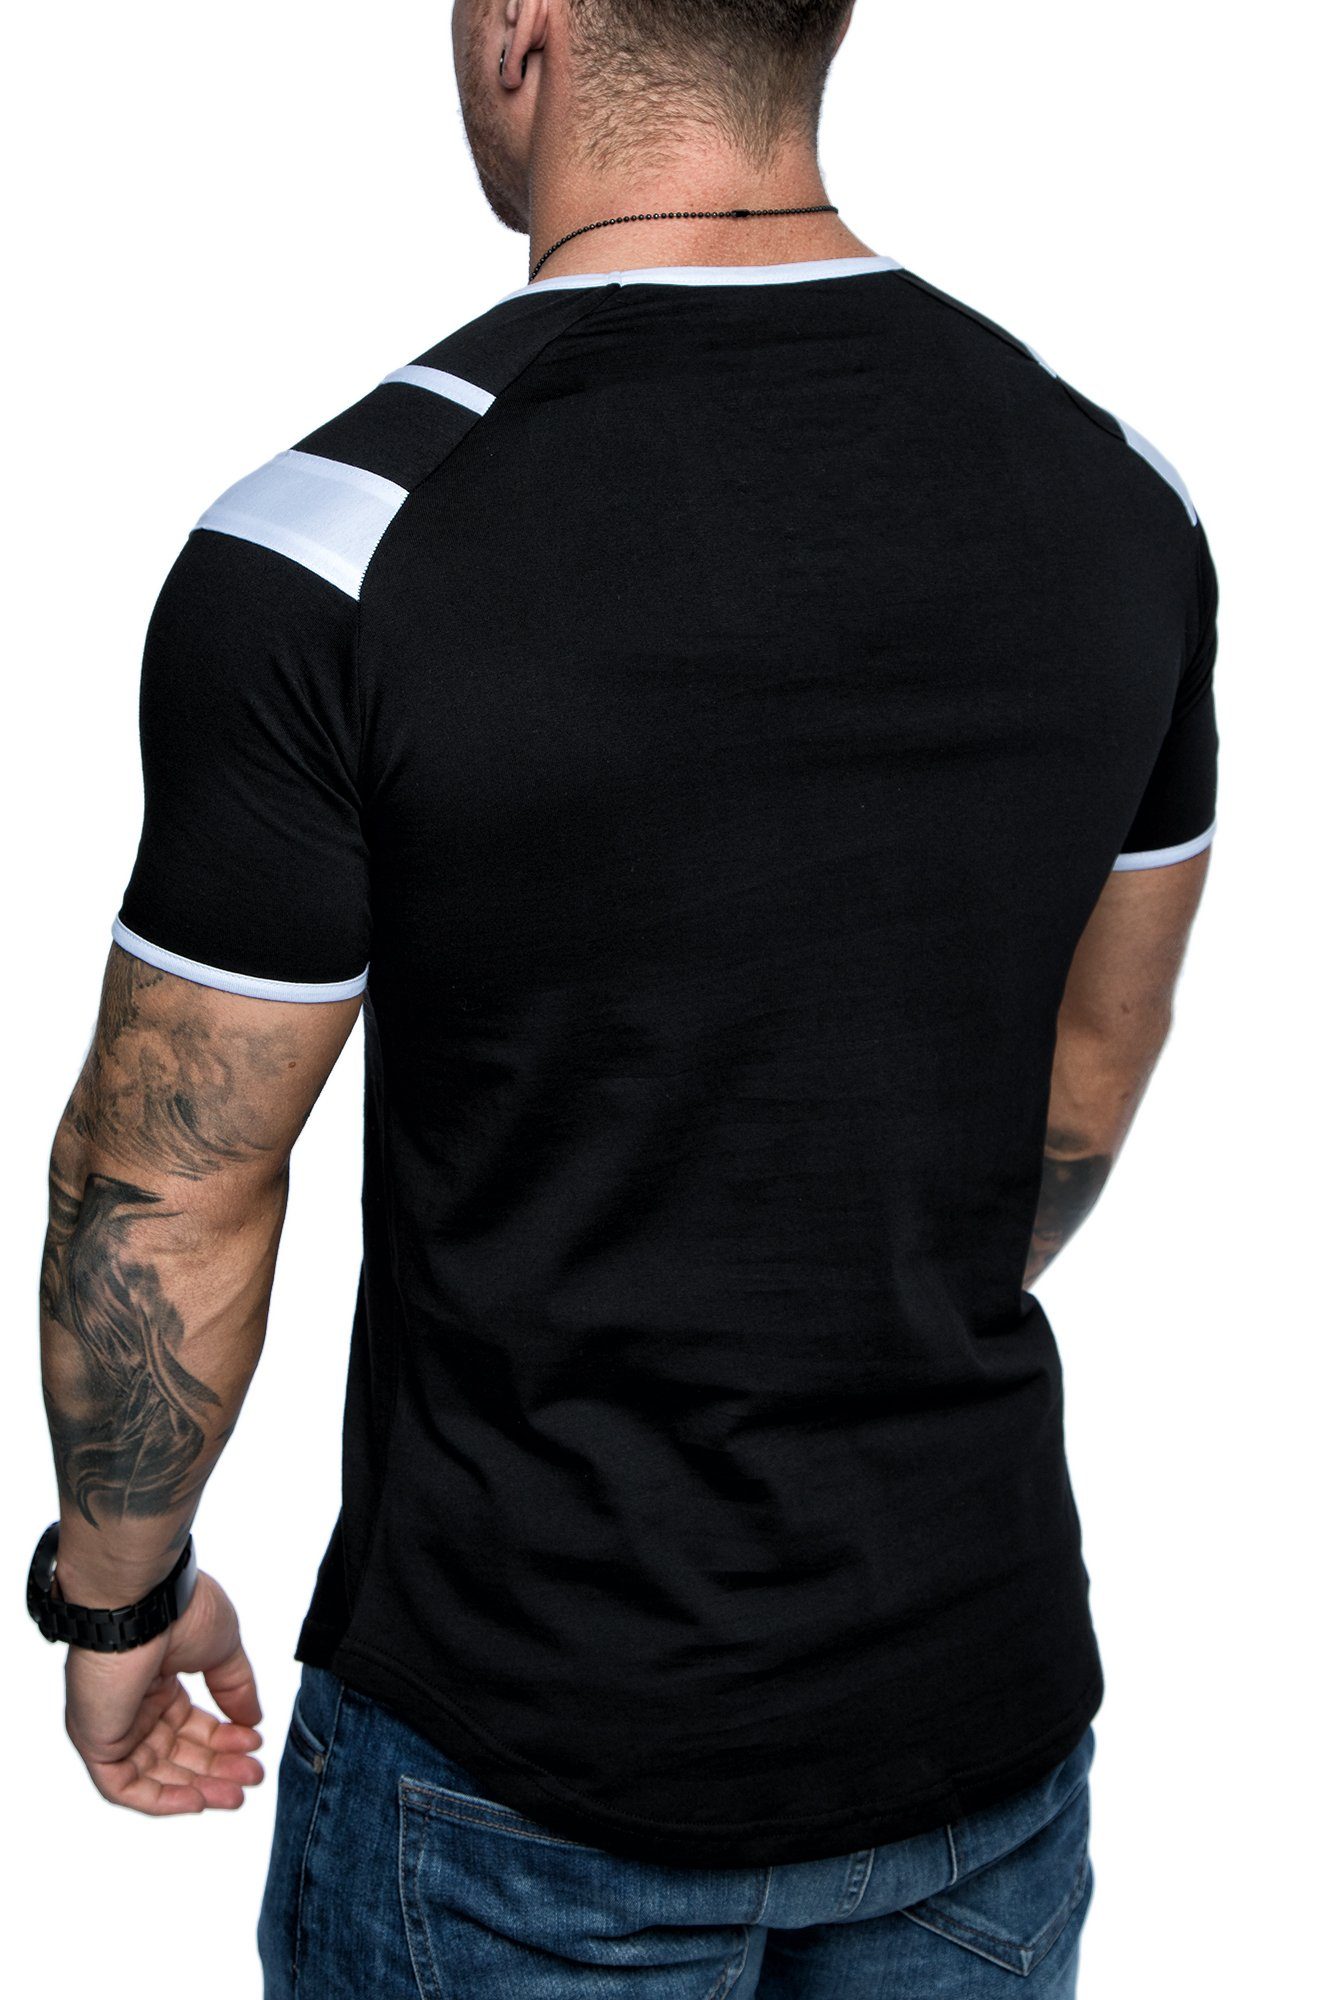 Schwarz/Weiß Logo T-Shirt T-Shirt Herren Stickerei REPUBLIX INDIANAPOLIS mit Oversize